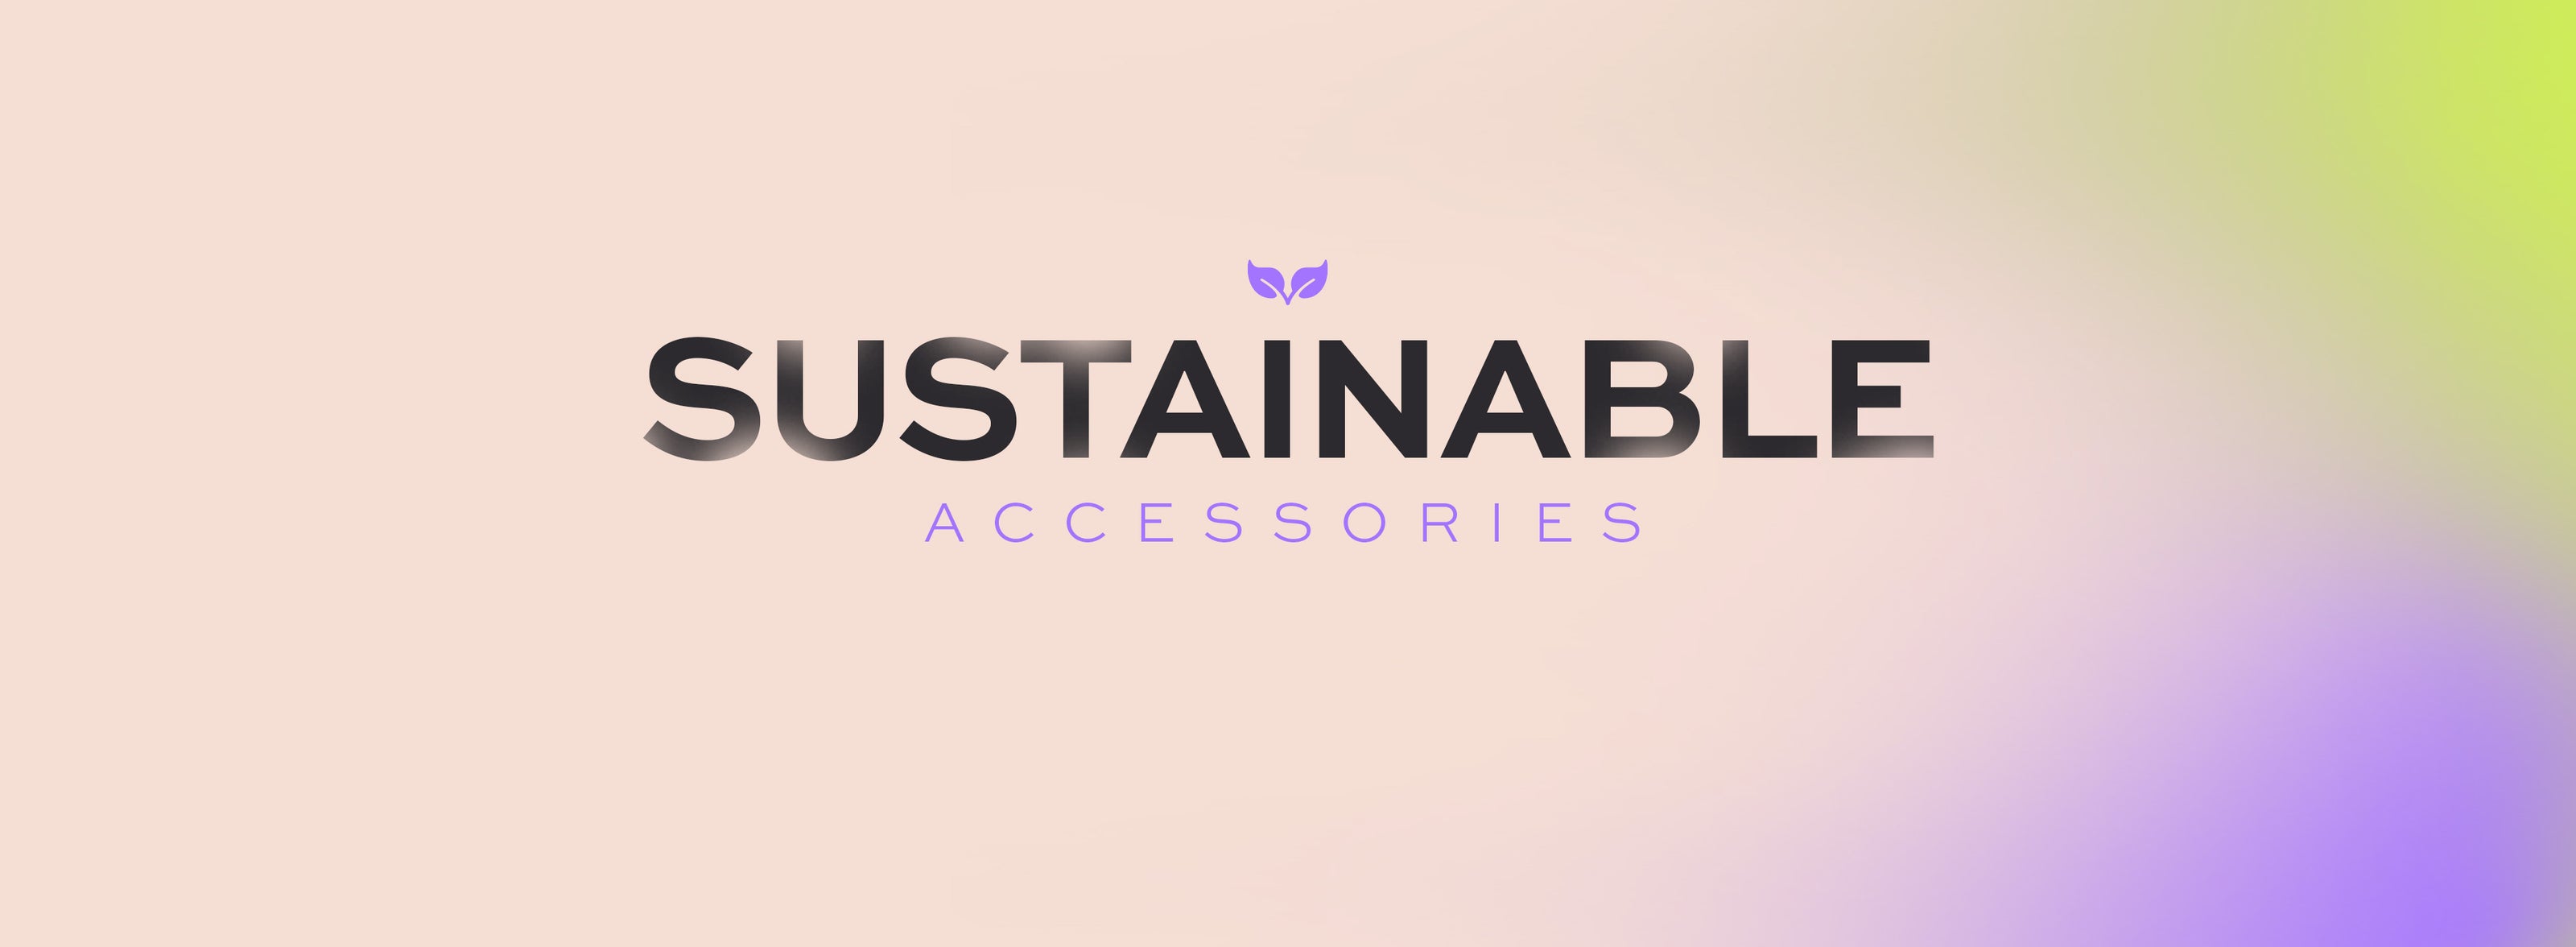 Accessori sostenibili